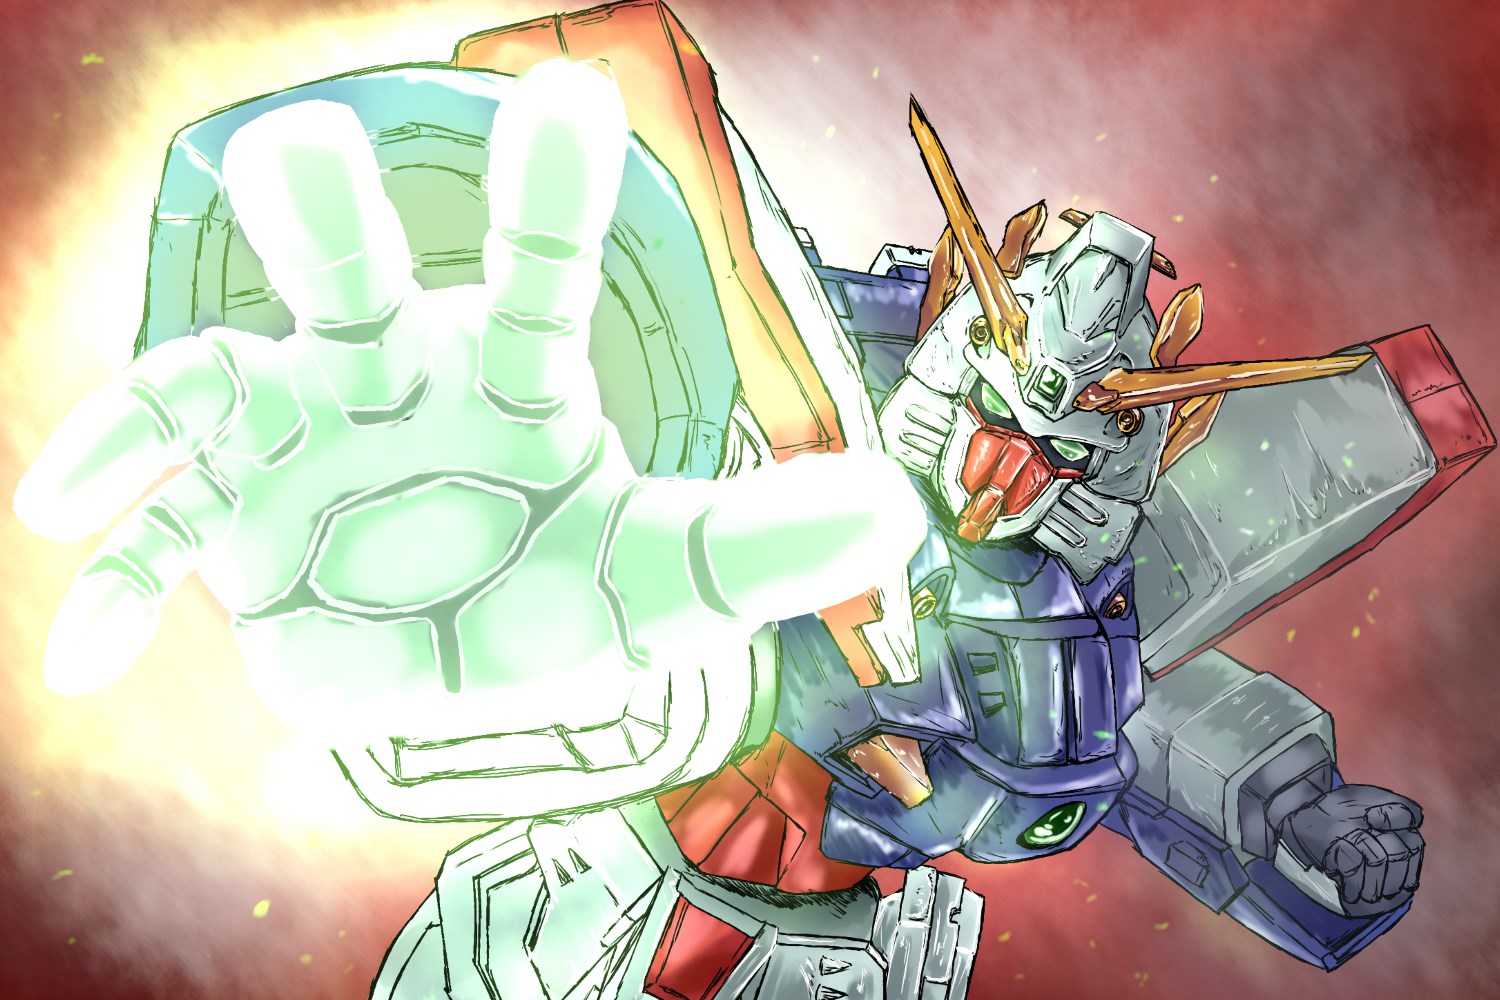 Anime Mech Super Robot Wars Mobile Fighter G Gundam Shining Gundam Artwork Digital Art Fan Art 1500x1000